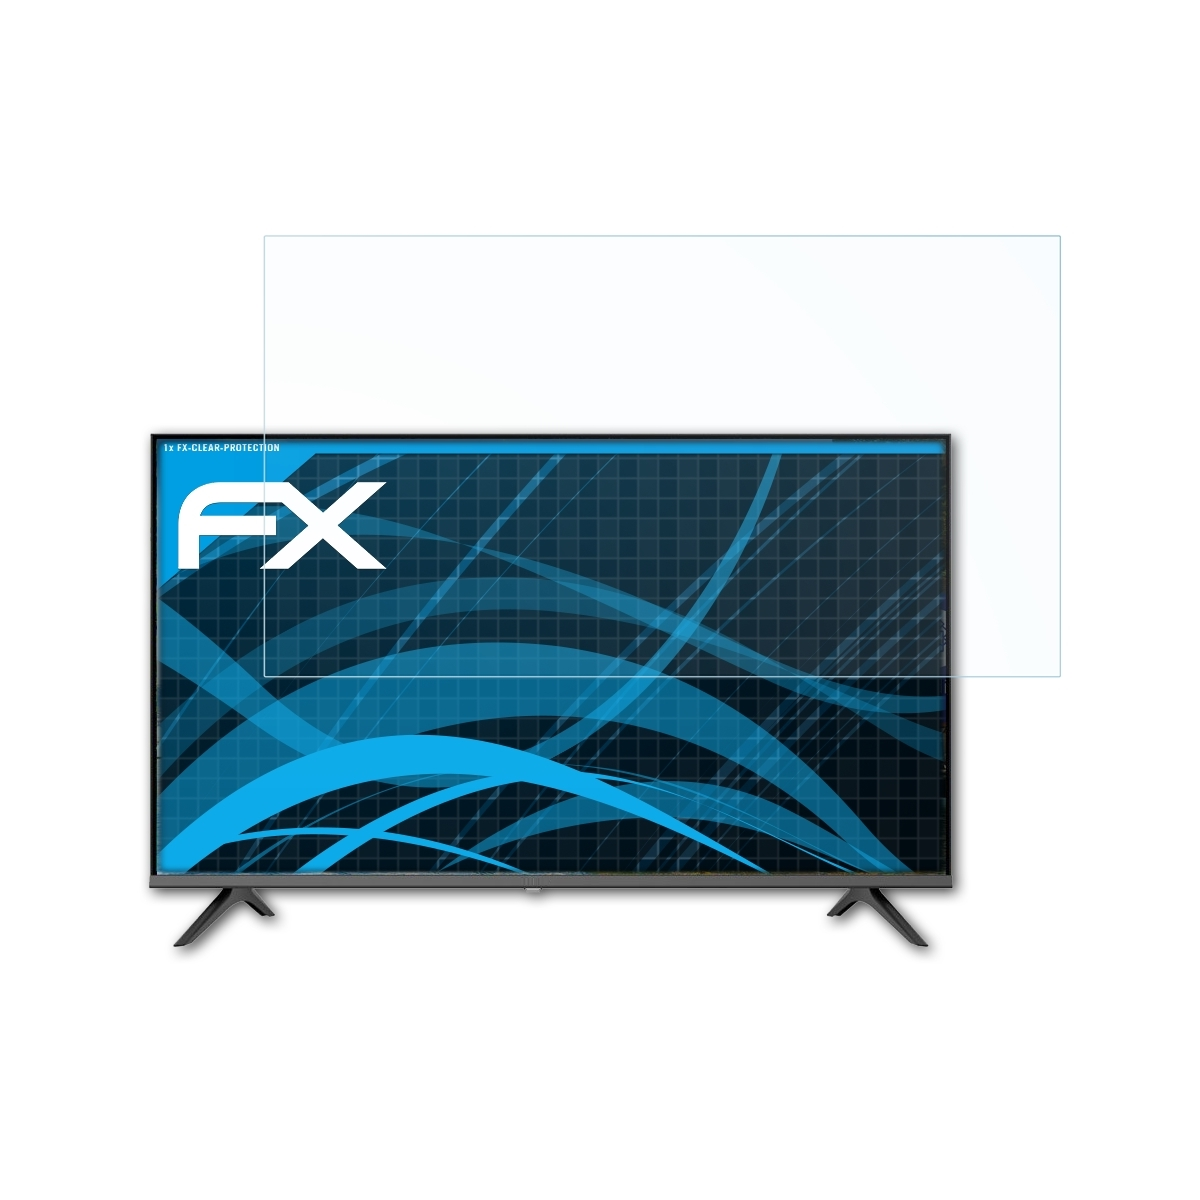 Displayschutz(für Hisense 40AE5500F) ATFOLIX FX-Clear